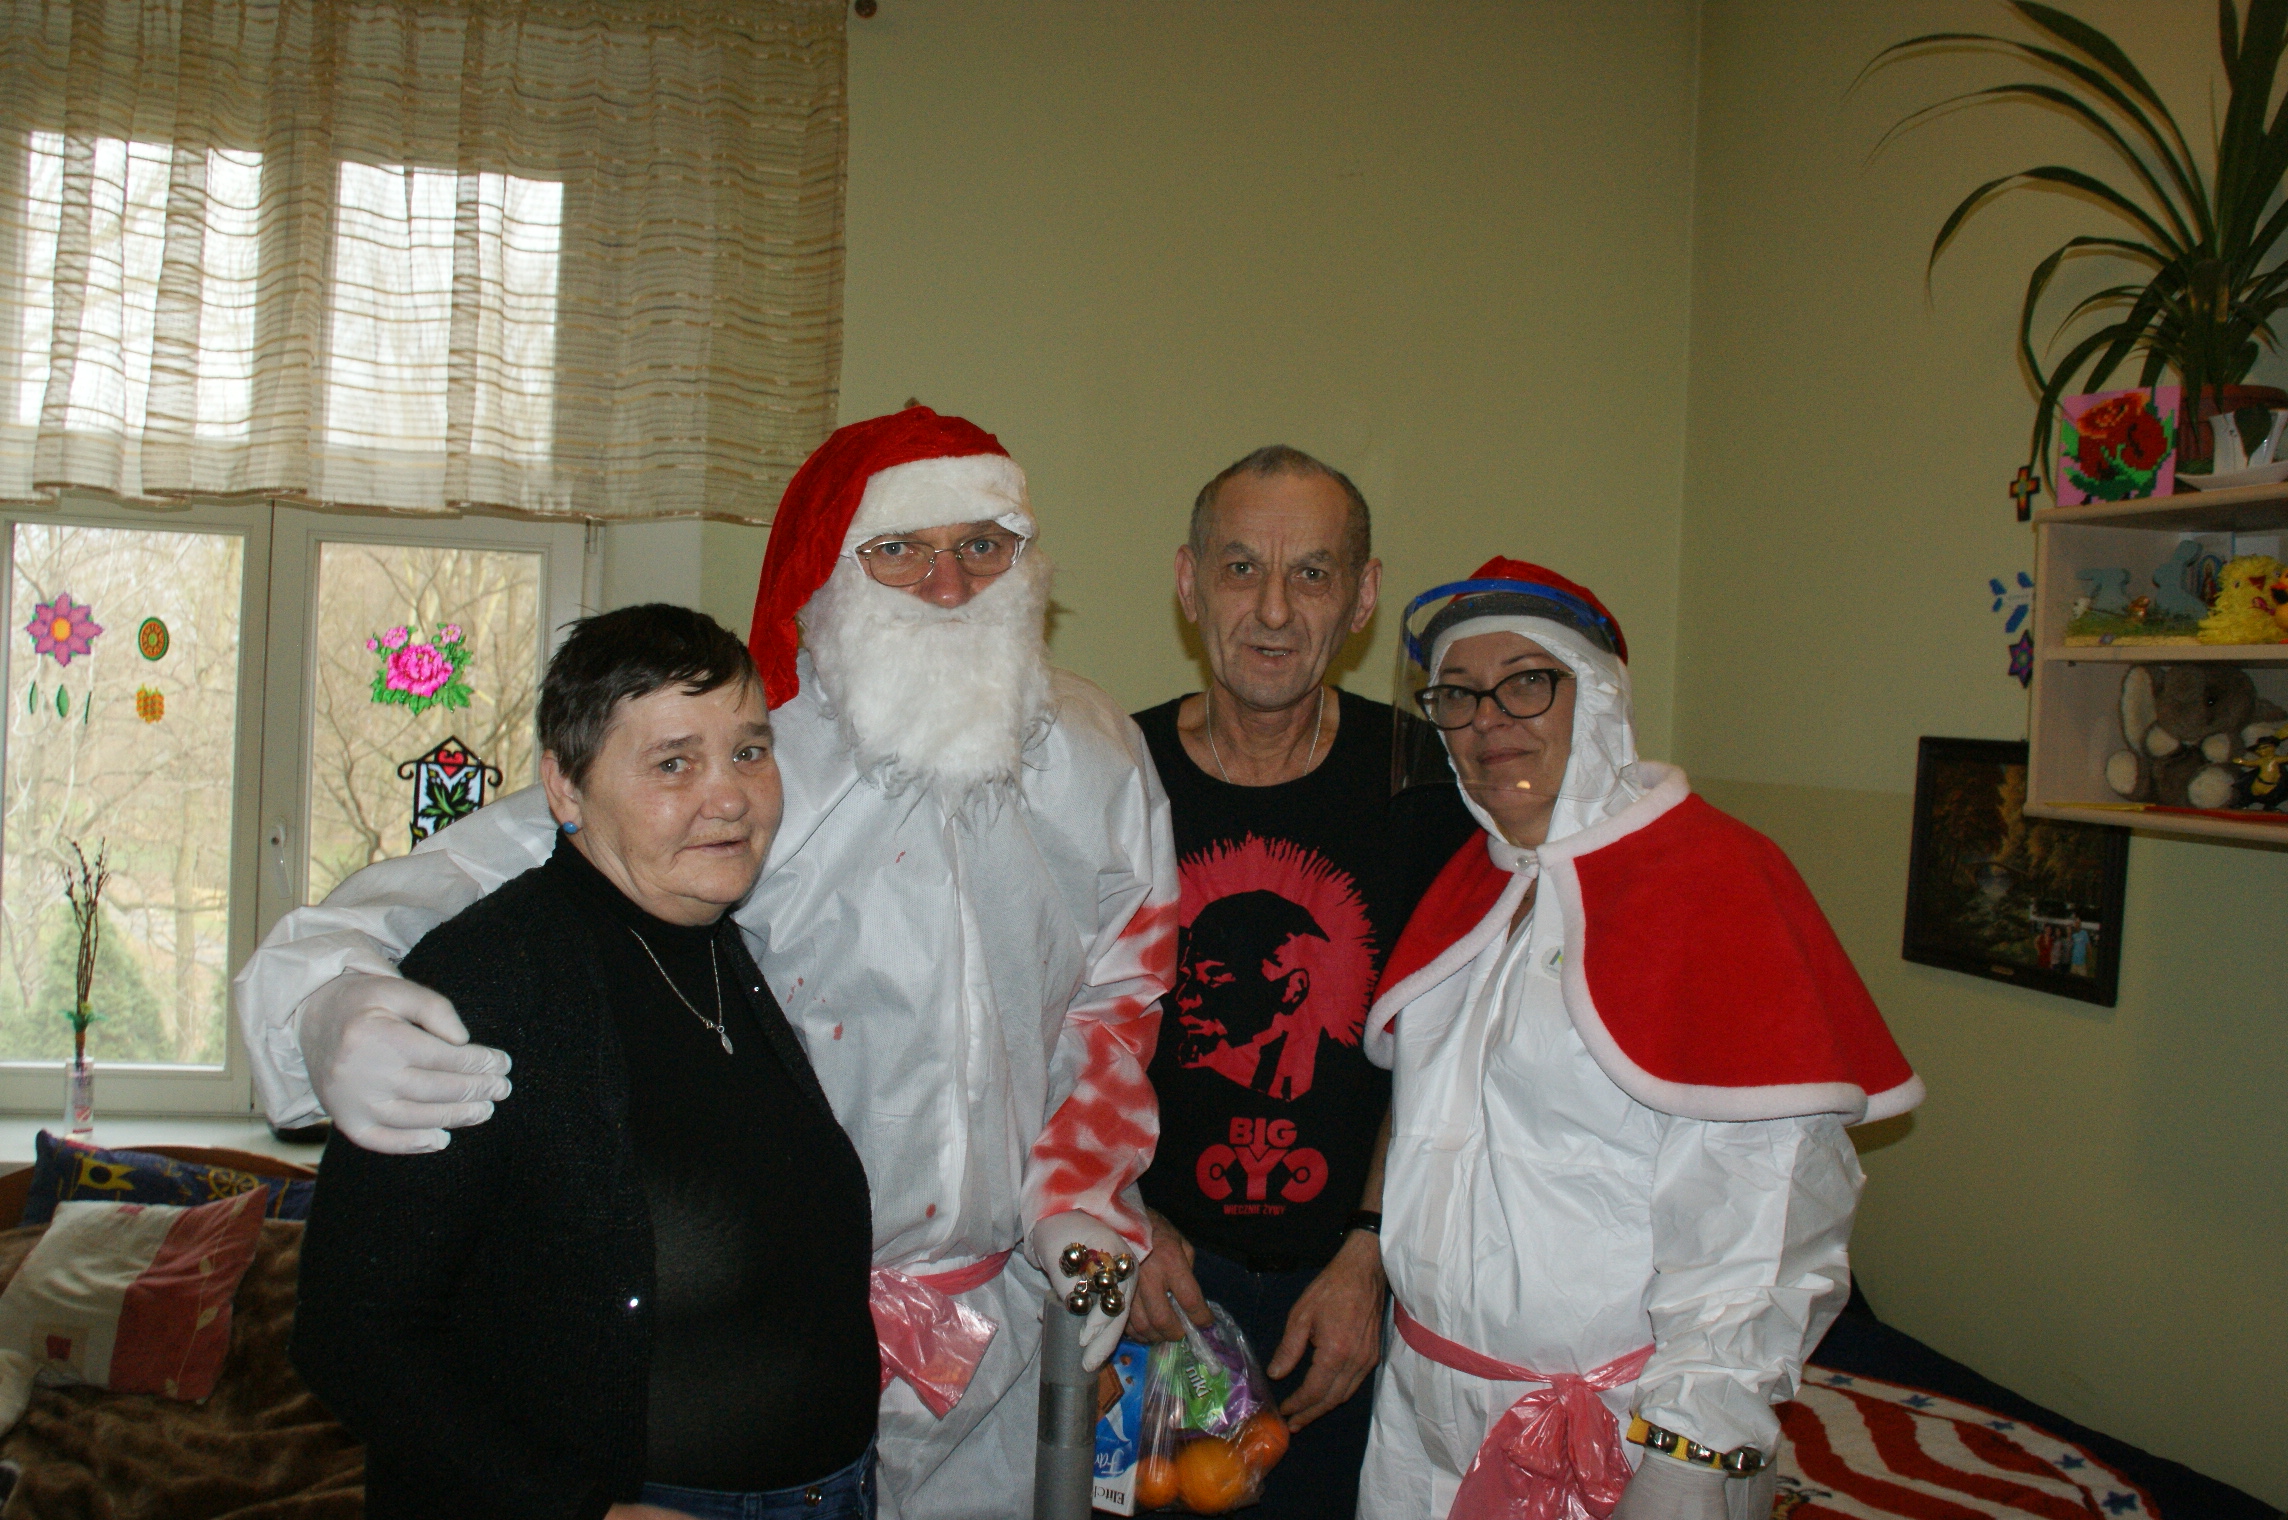 Święty Mikołaj i Śnieżynka wraz z podarkami dla mieszkańców Domu Pomocy Społecznej w Psarach.